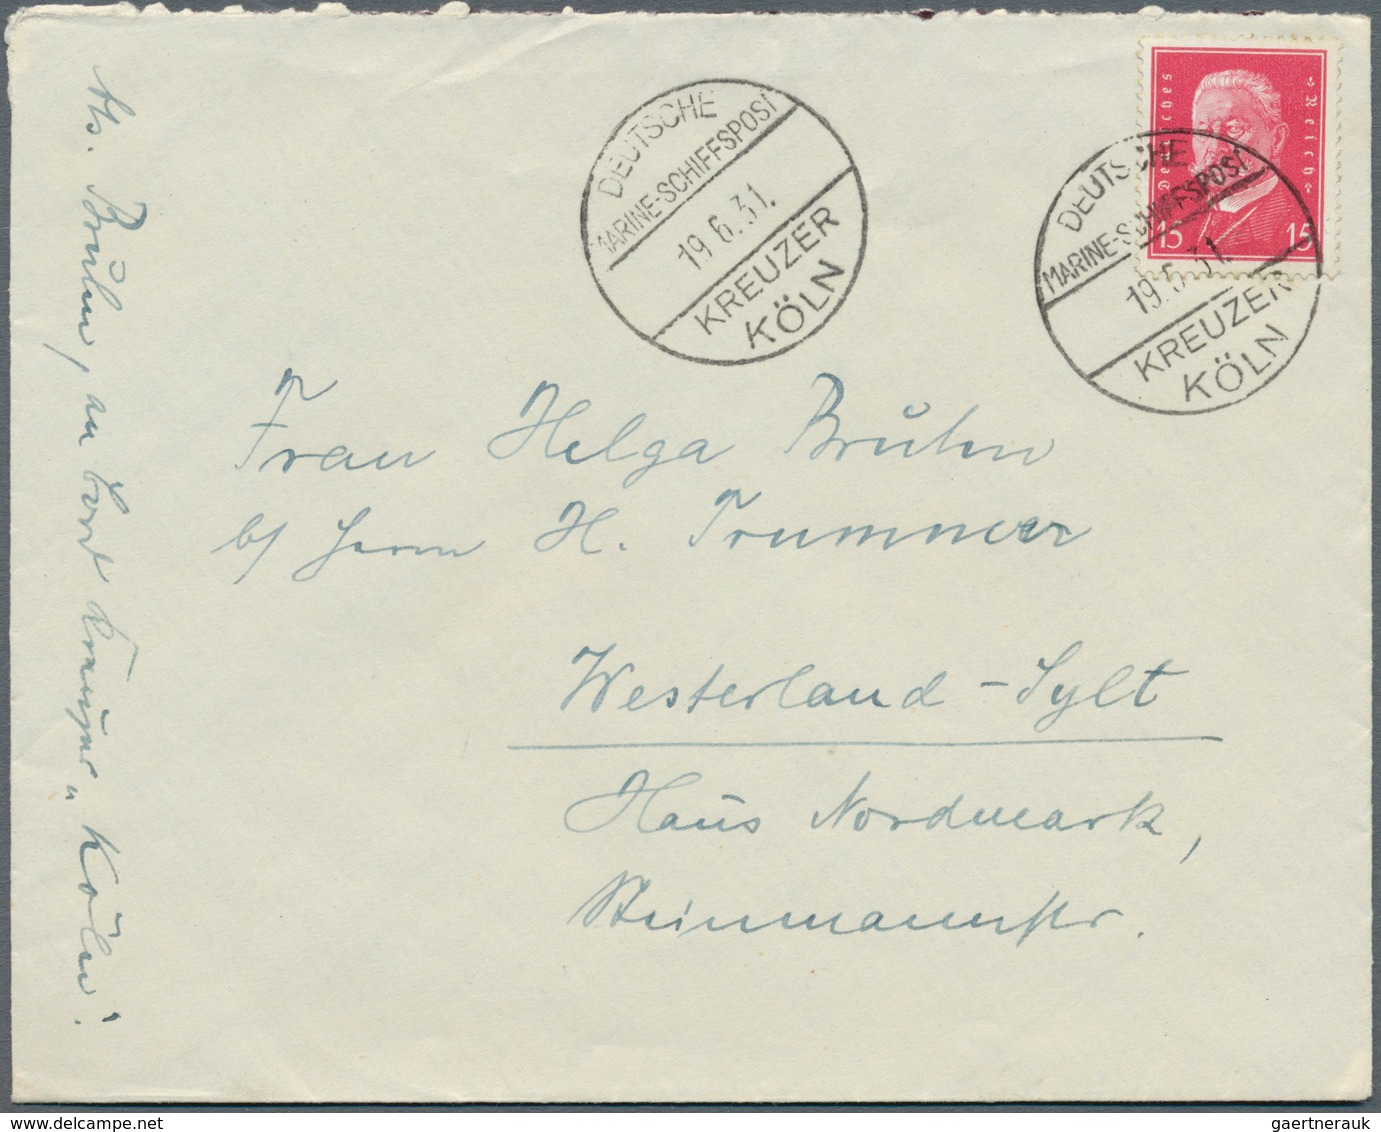 24861 Deutsche Schiffspost im Ausland - Seepost: 1920/1945, Partie von über 80 Belegen mit vielen interess